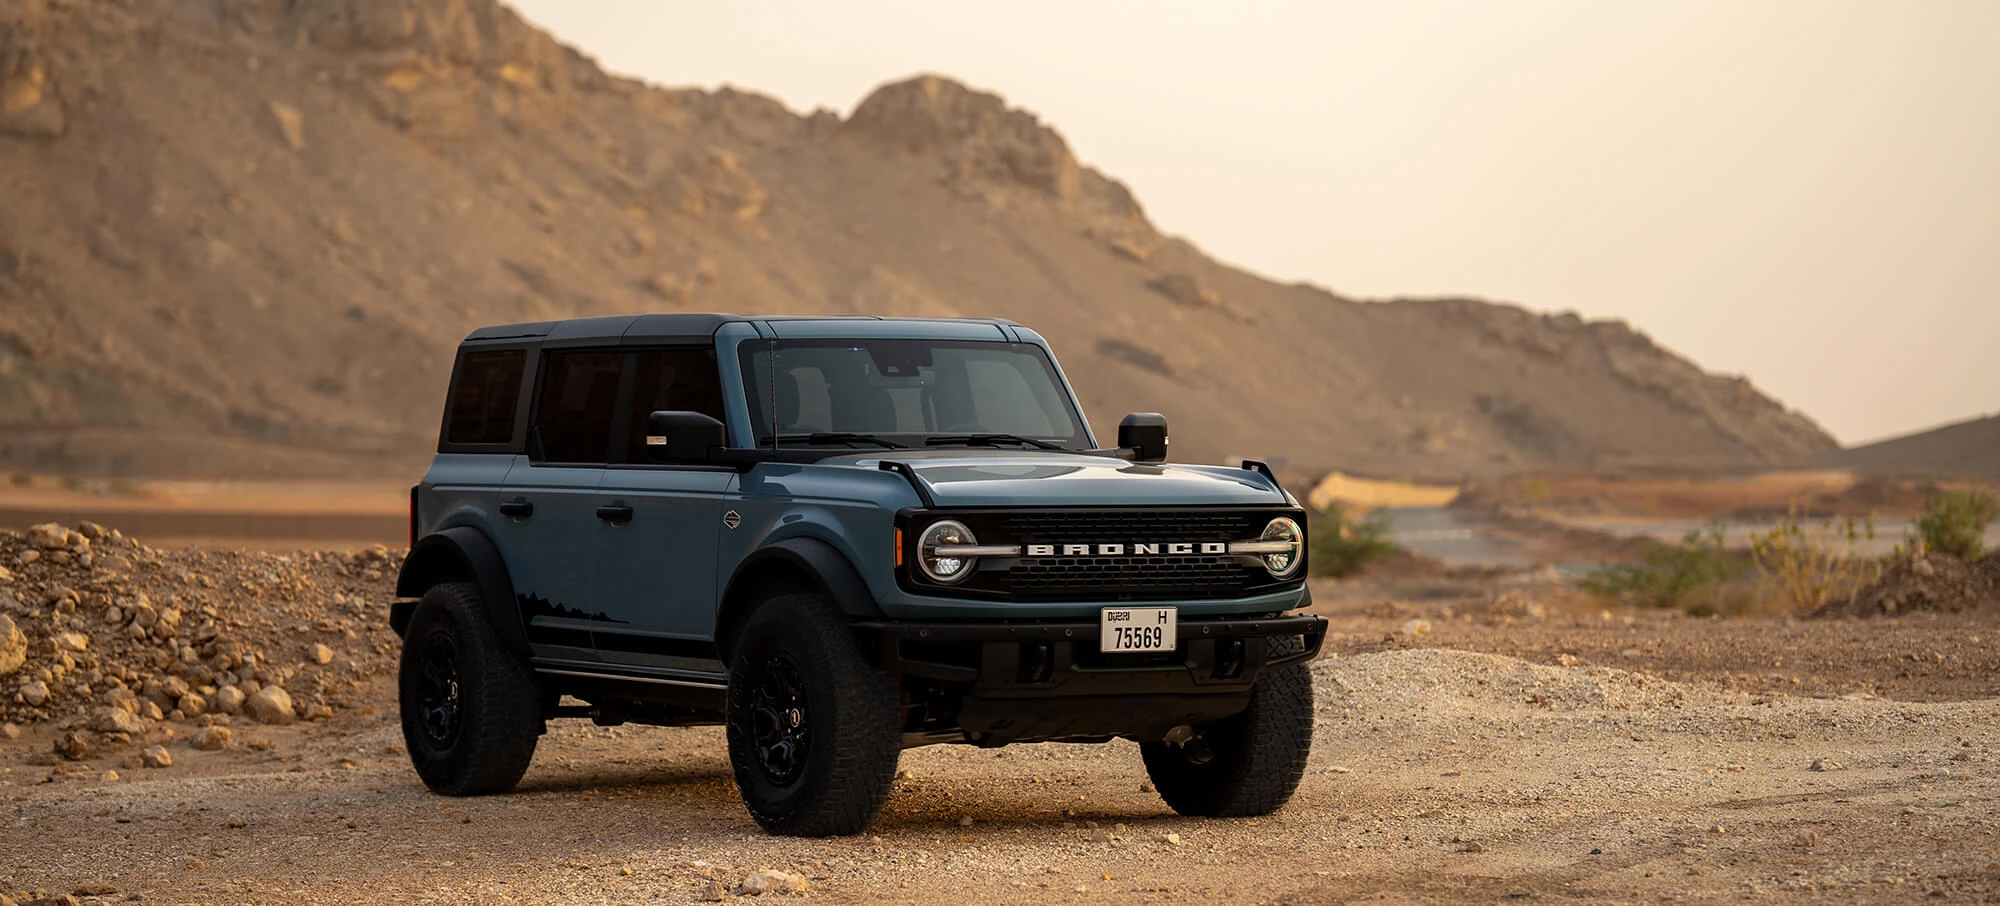 Hyr Ford Bronco i Dubai